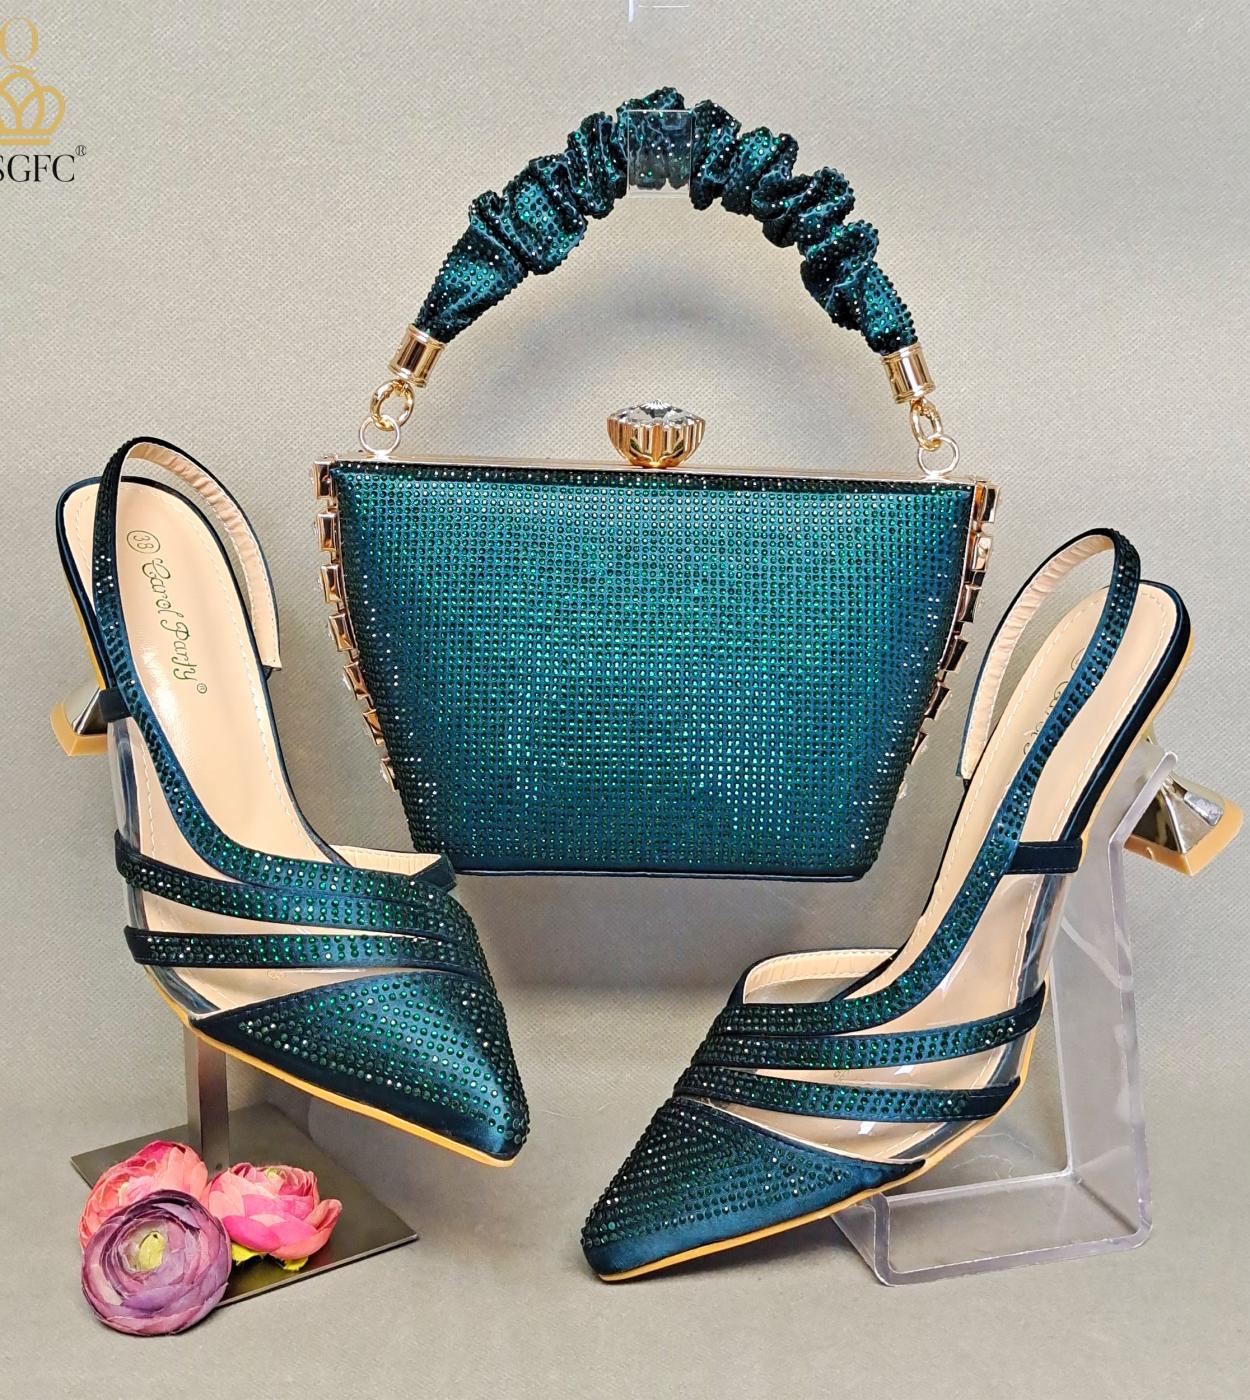 Qsgfc الأخضر بلون الماس الديكور أنيقة وبسيطة مجموعة حقيبة أحذية نسائية رائعة للحفلات